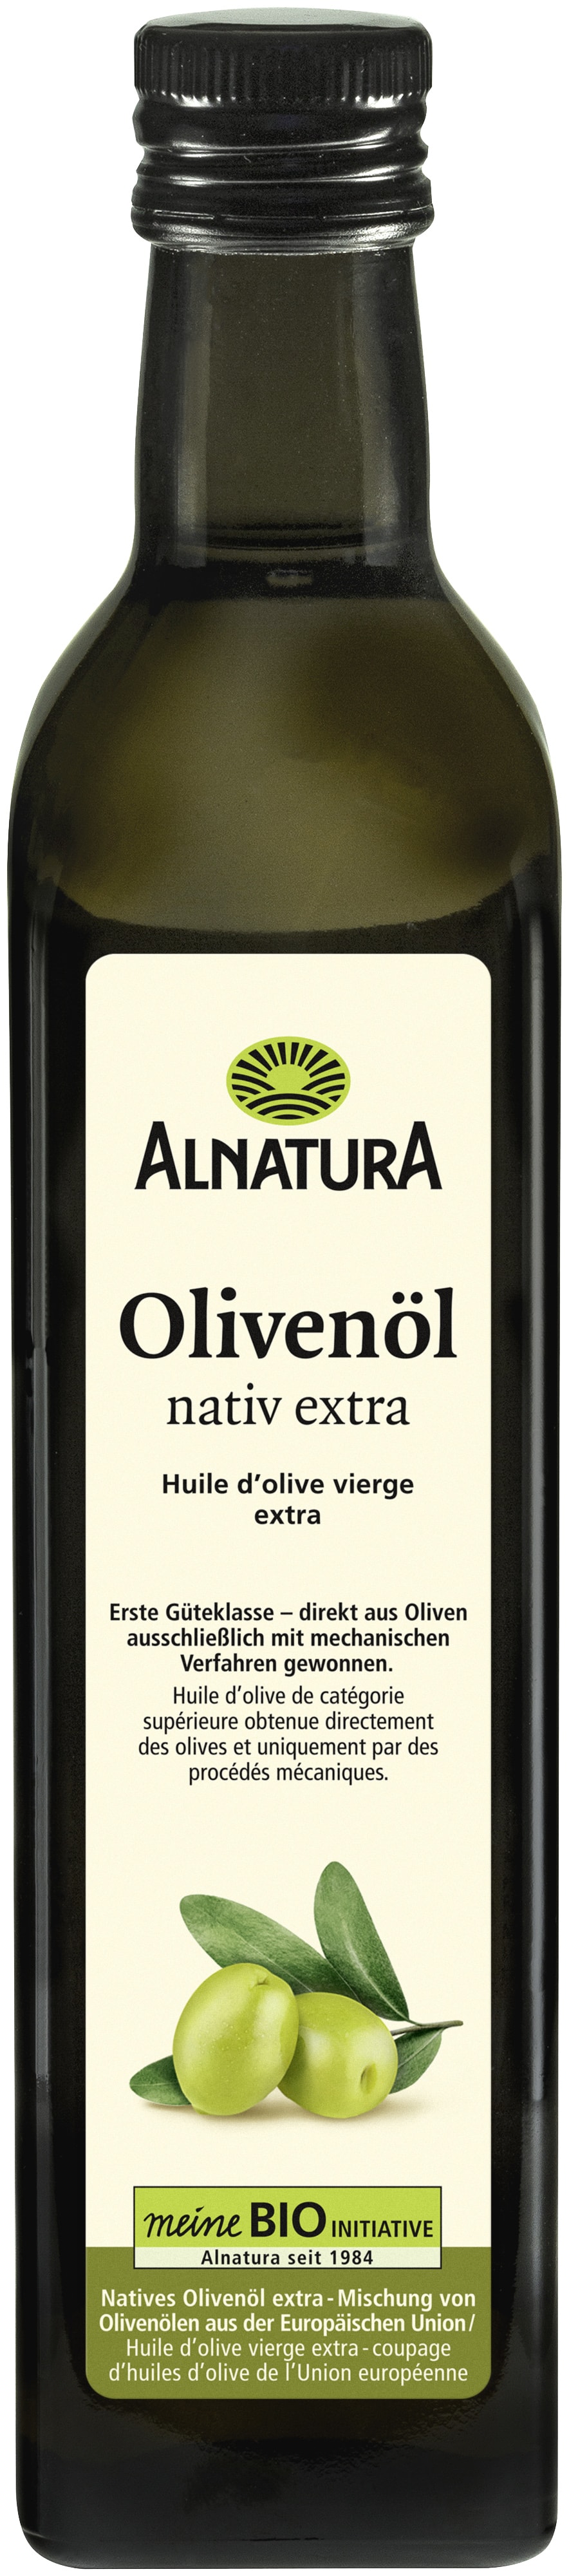 ALNATURA Olivenöl Sp